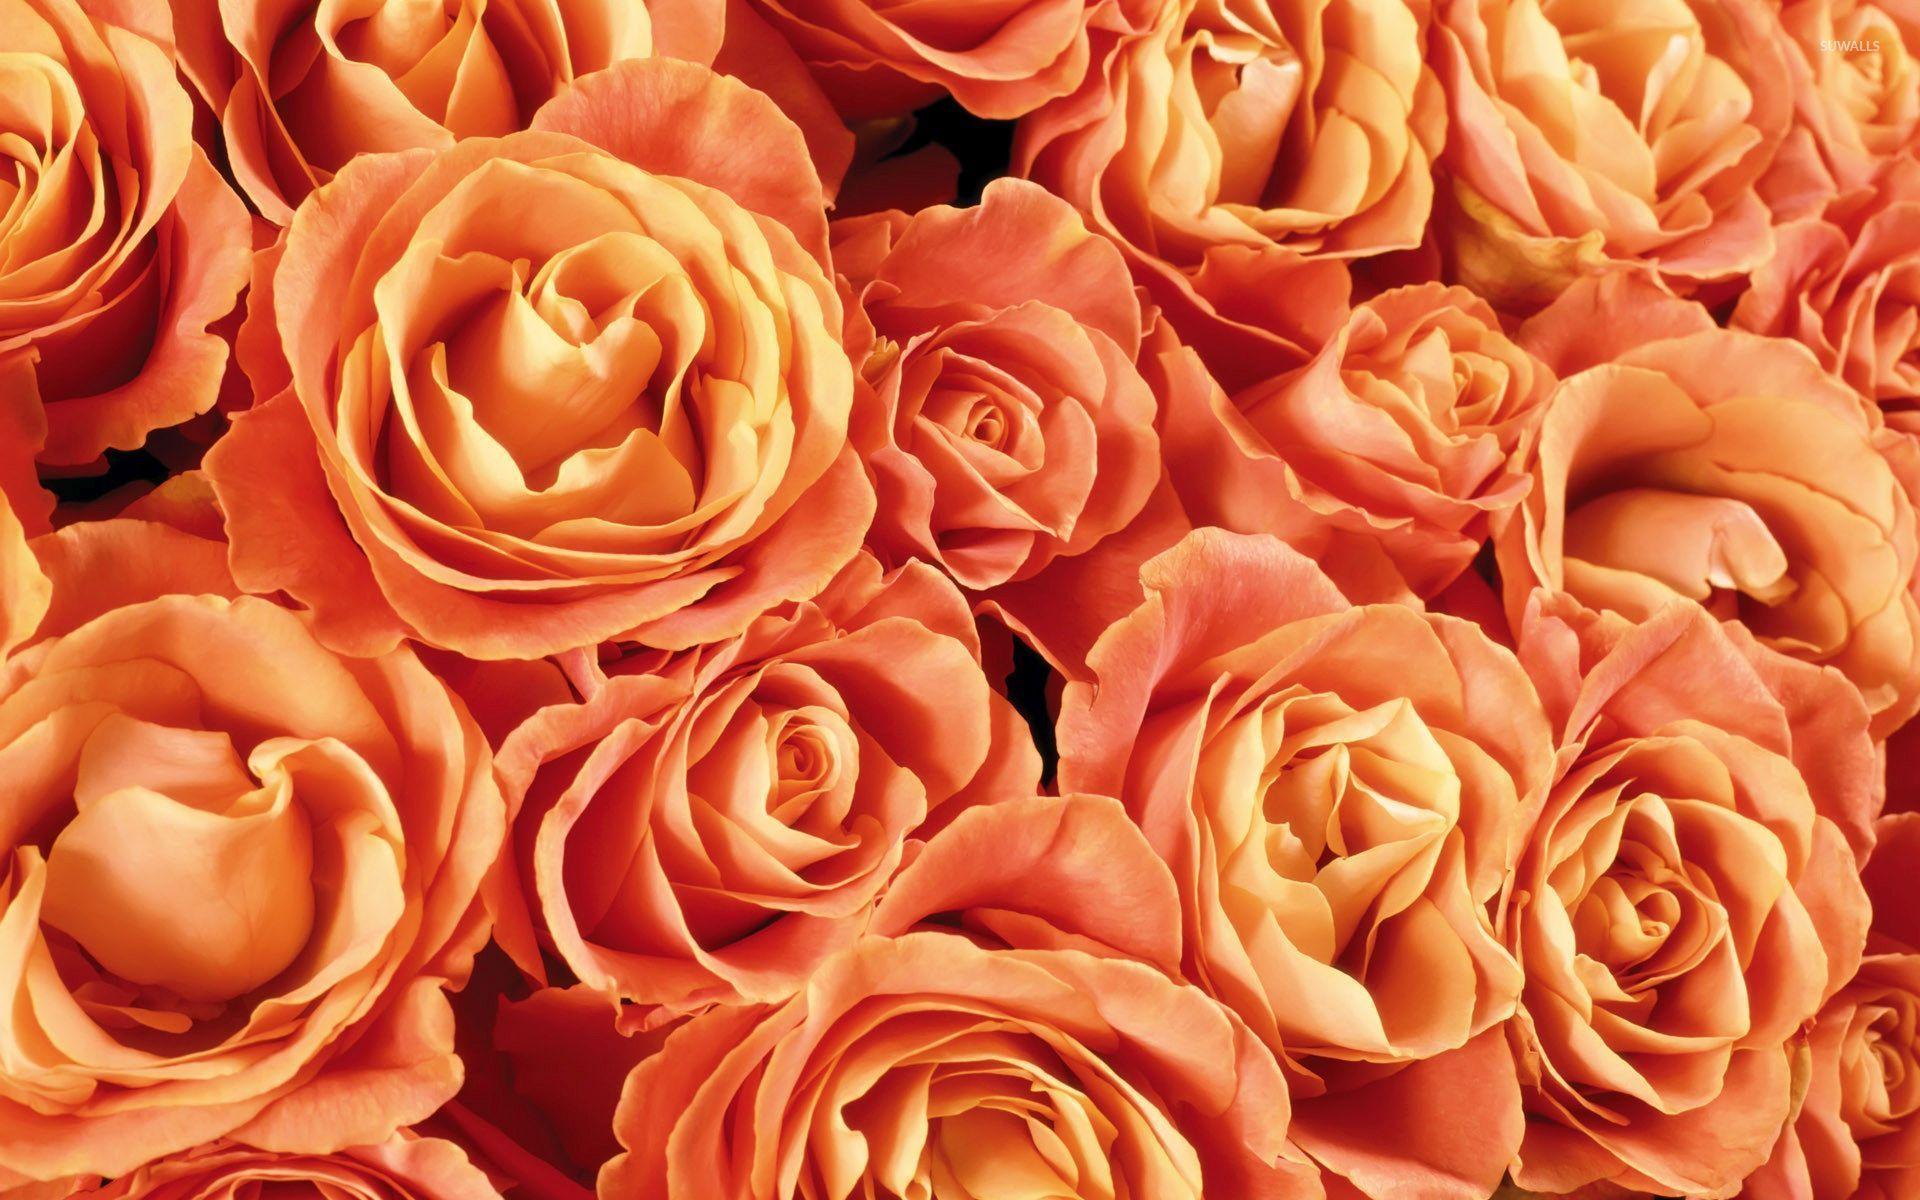 Hoa hồng cam (Orange roses): Hoa hồng cam rực rỡ sẽ khiến trái tim bạn tan chảy. Với vẻ đẹp lãng mạn và sang trọng, những bông hoa hồng cam sẽ làm cho không gian của bạn trở nên tươi mới và đầy màu sắc. Hãy đắm mình trong vẻ đẹp tuyệt vời của những bông hoa này và cảm nhận tình yêu và sự nhiệt huyết.